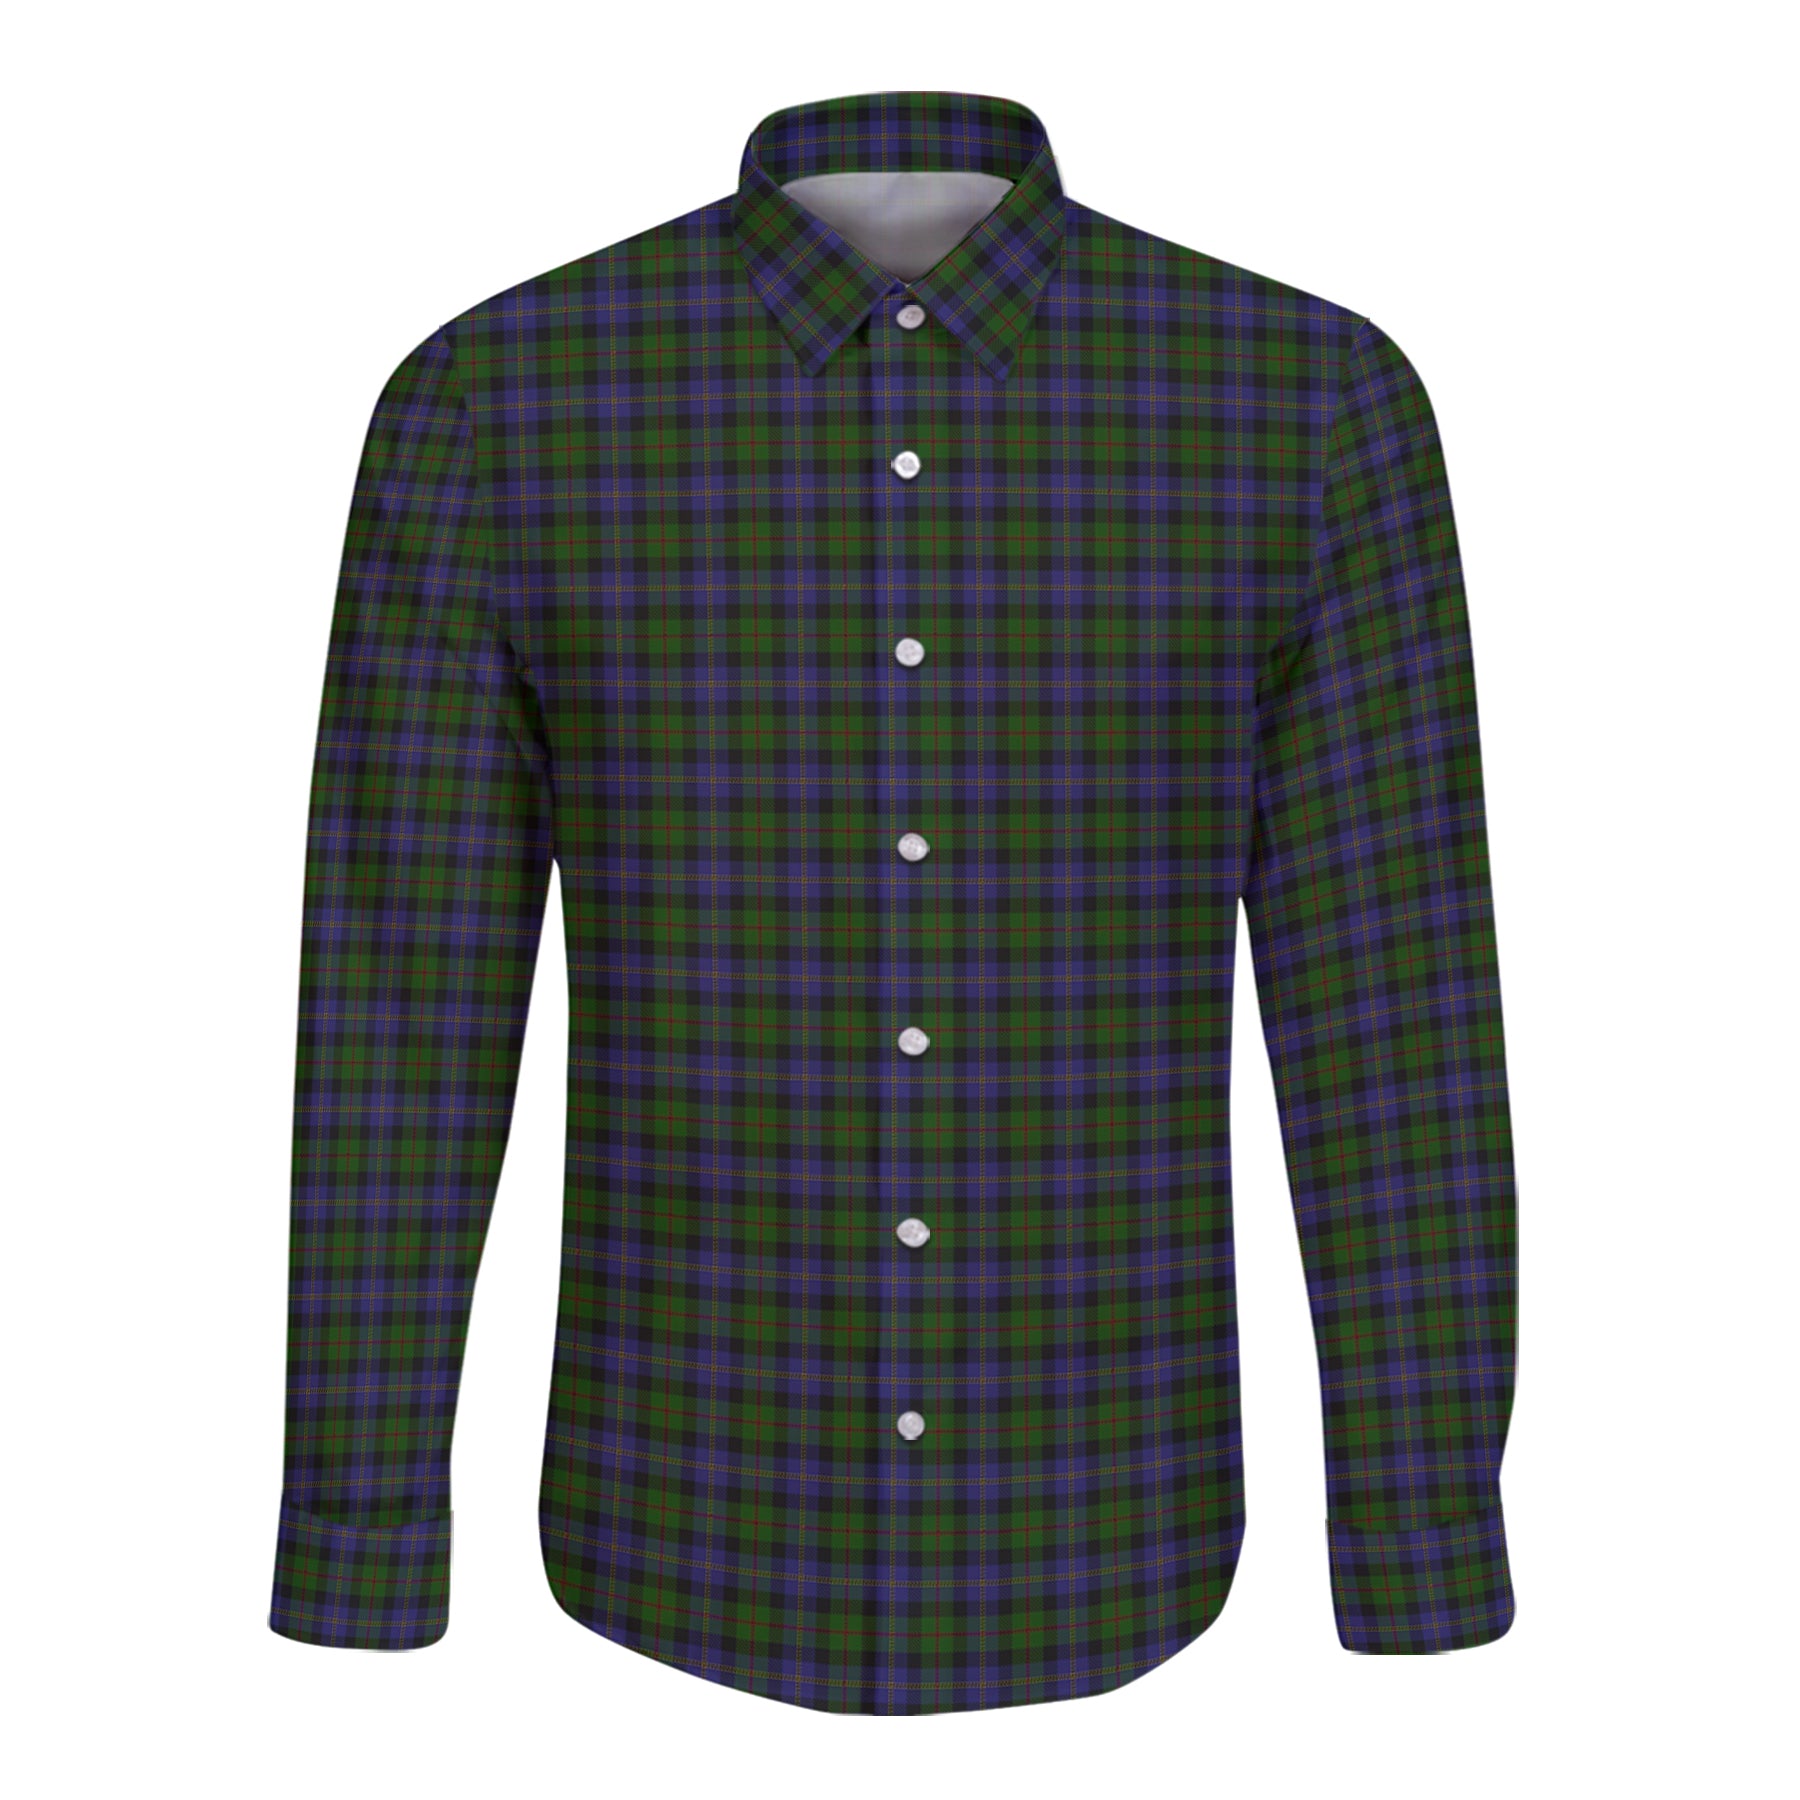 Maccaskill Tartan Long Sleeve Button Up Shirt K23